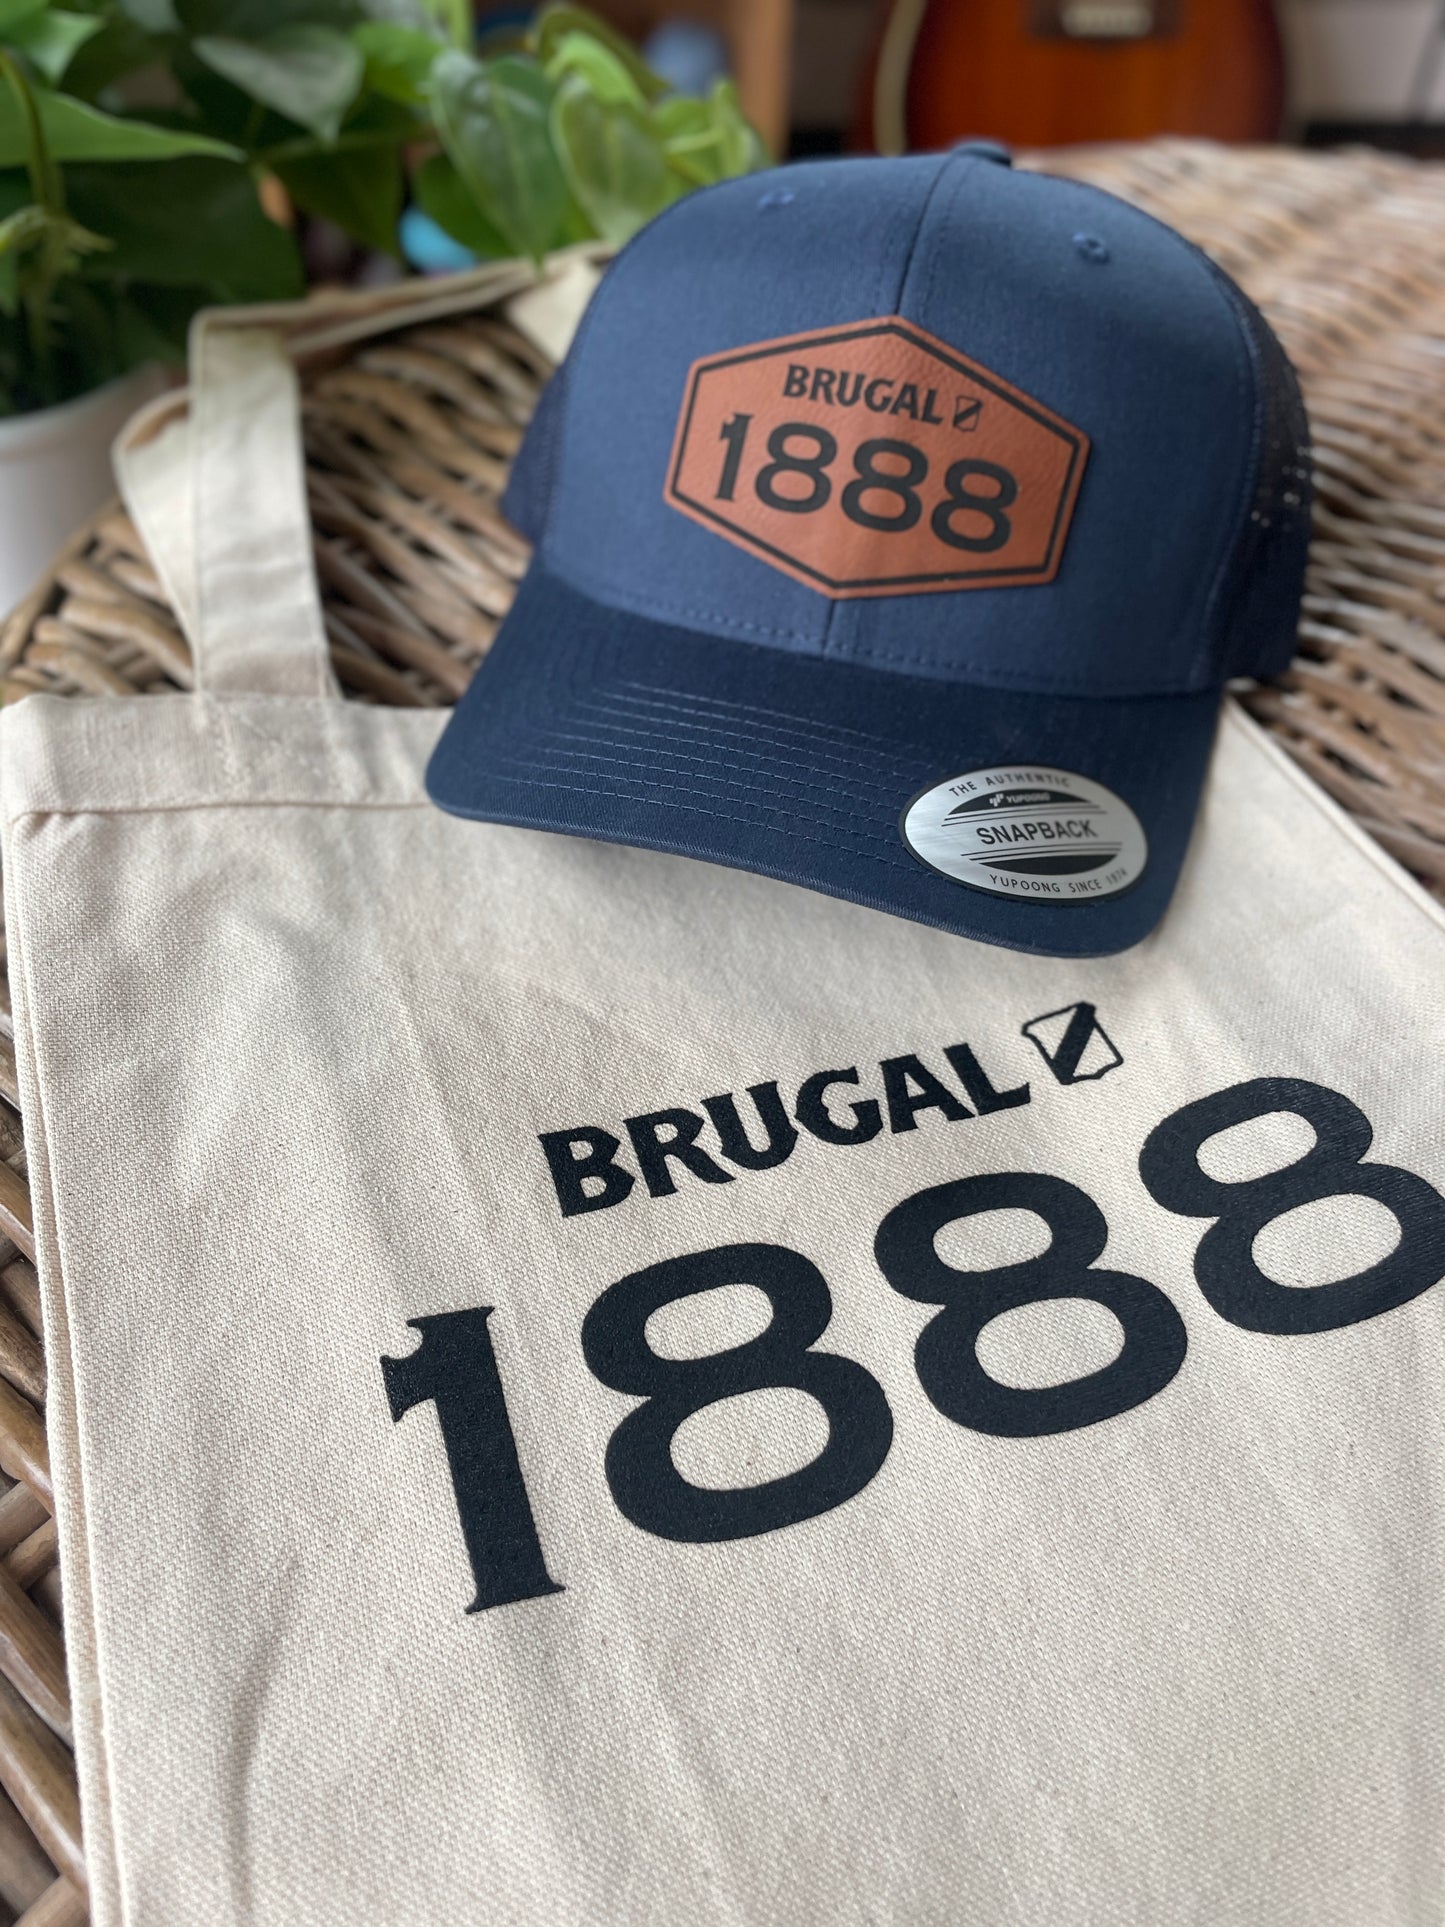 Brugal 1888 Tote Bag